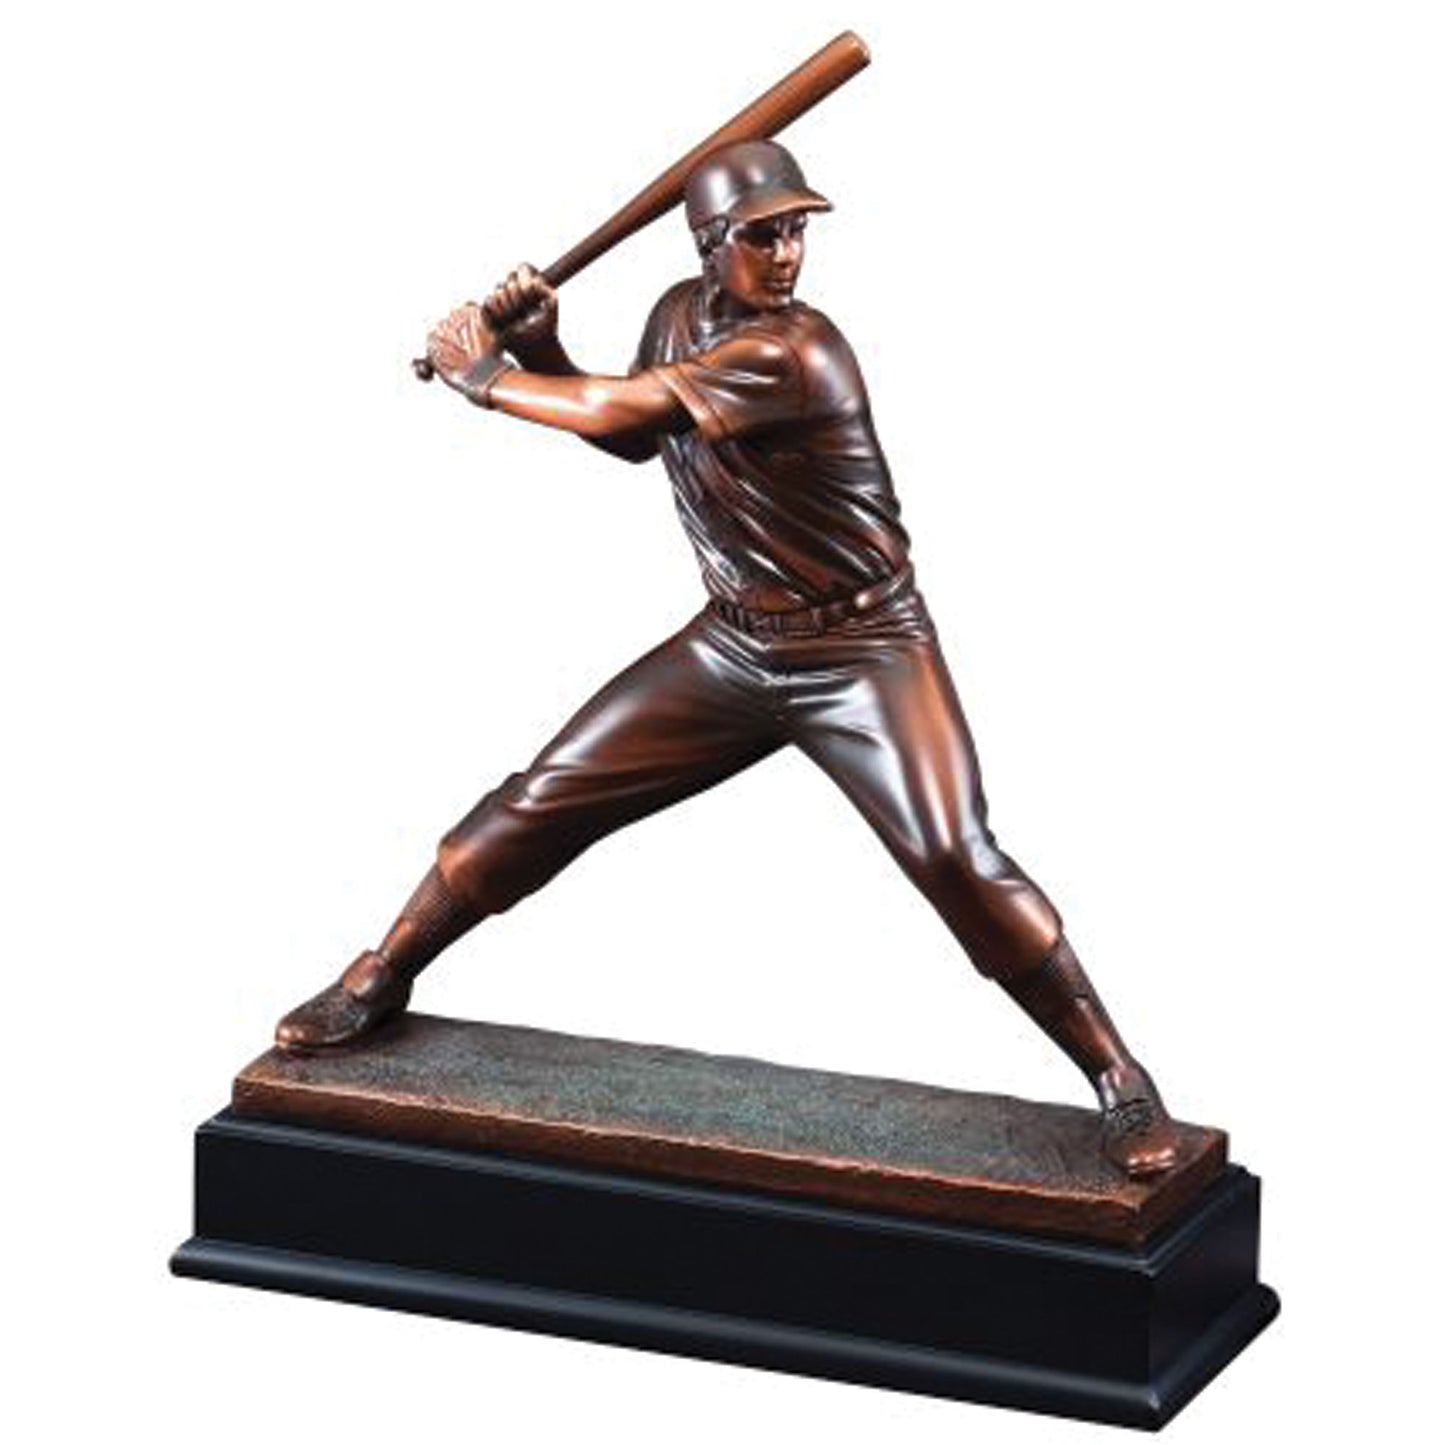 Baseball Galley Resin Sculpture - Batter - 15"